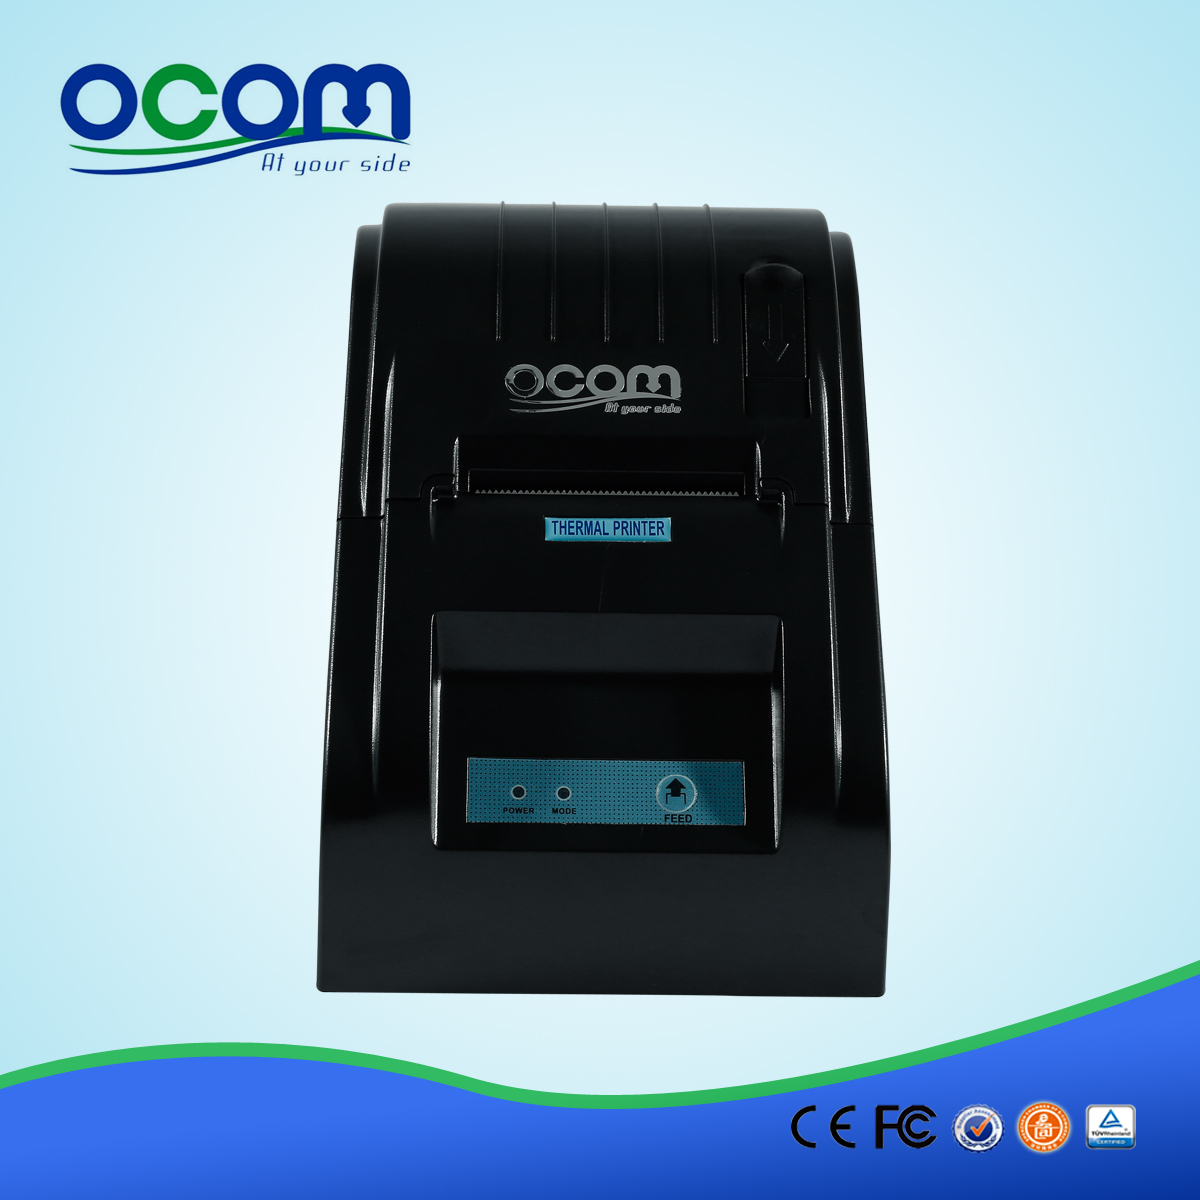 Stampante per ricevute termica promozionale da 58 mm OCPP-586-U